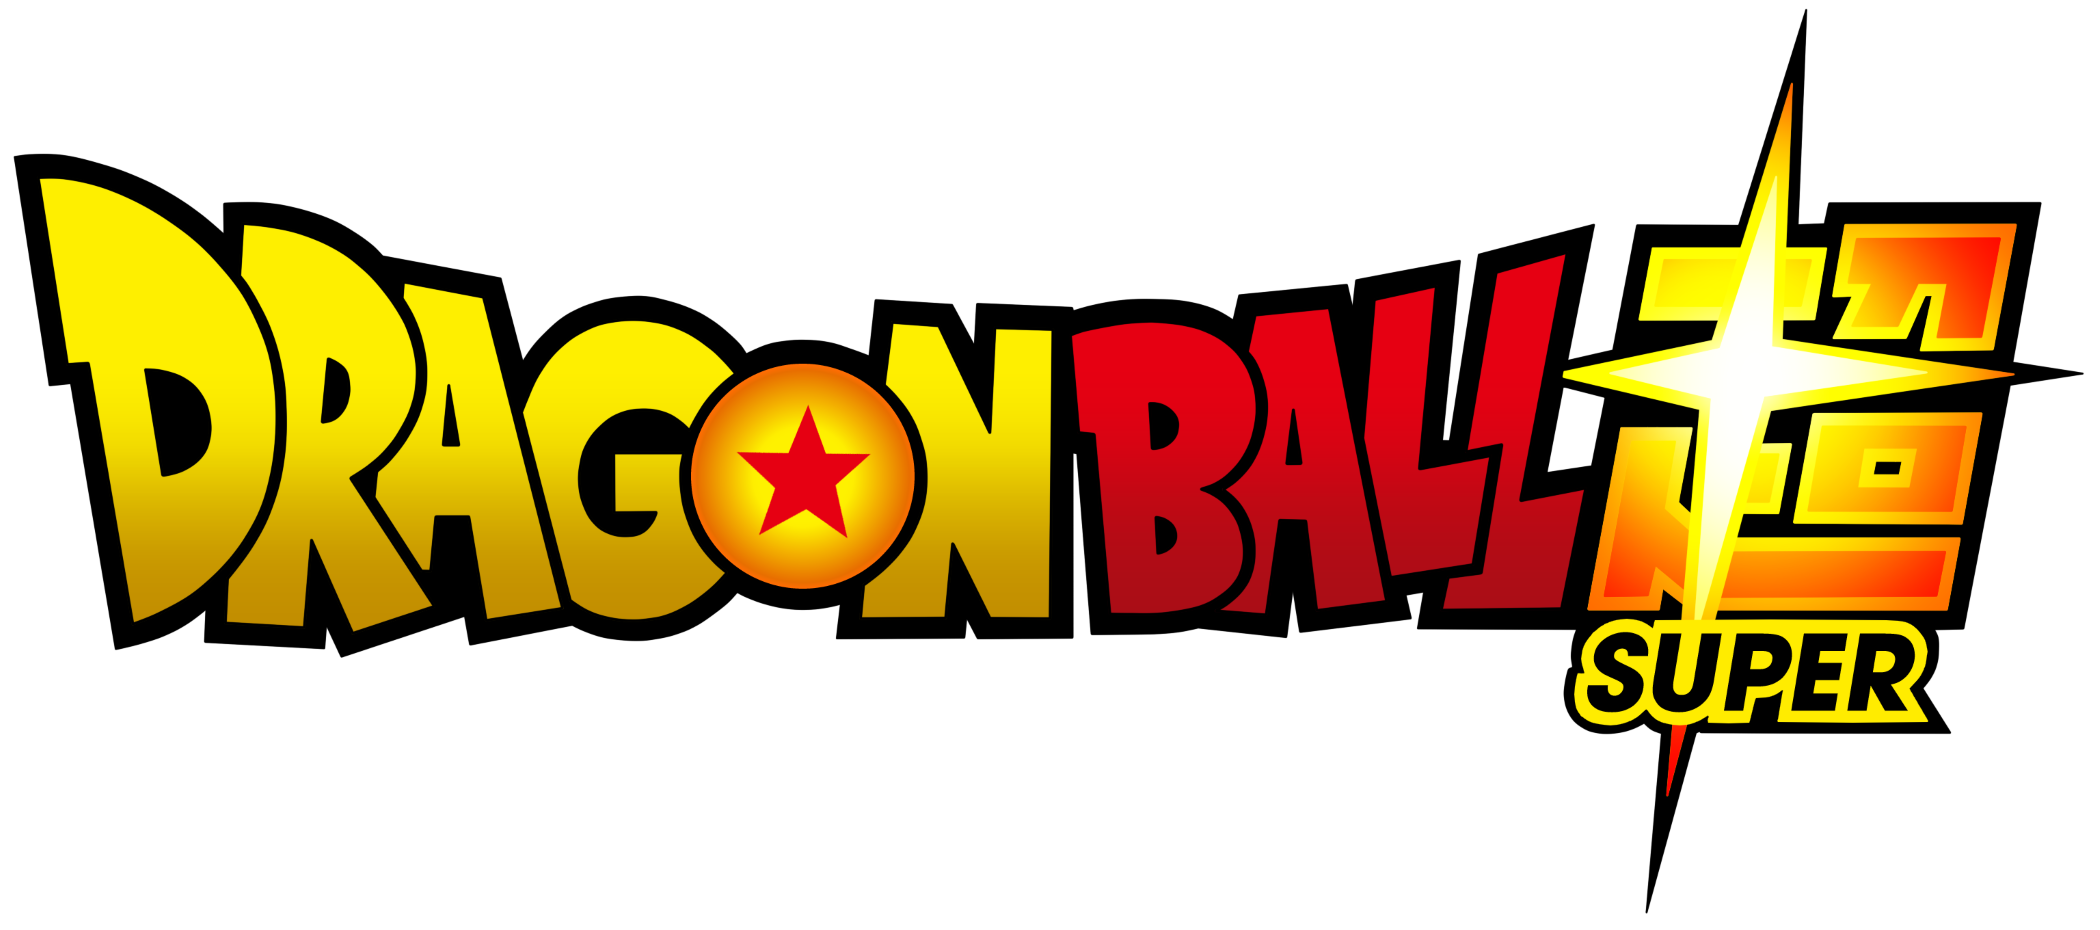 dragon-ball-super-logo-1 - PNG - Download de Logotipos